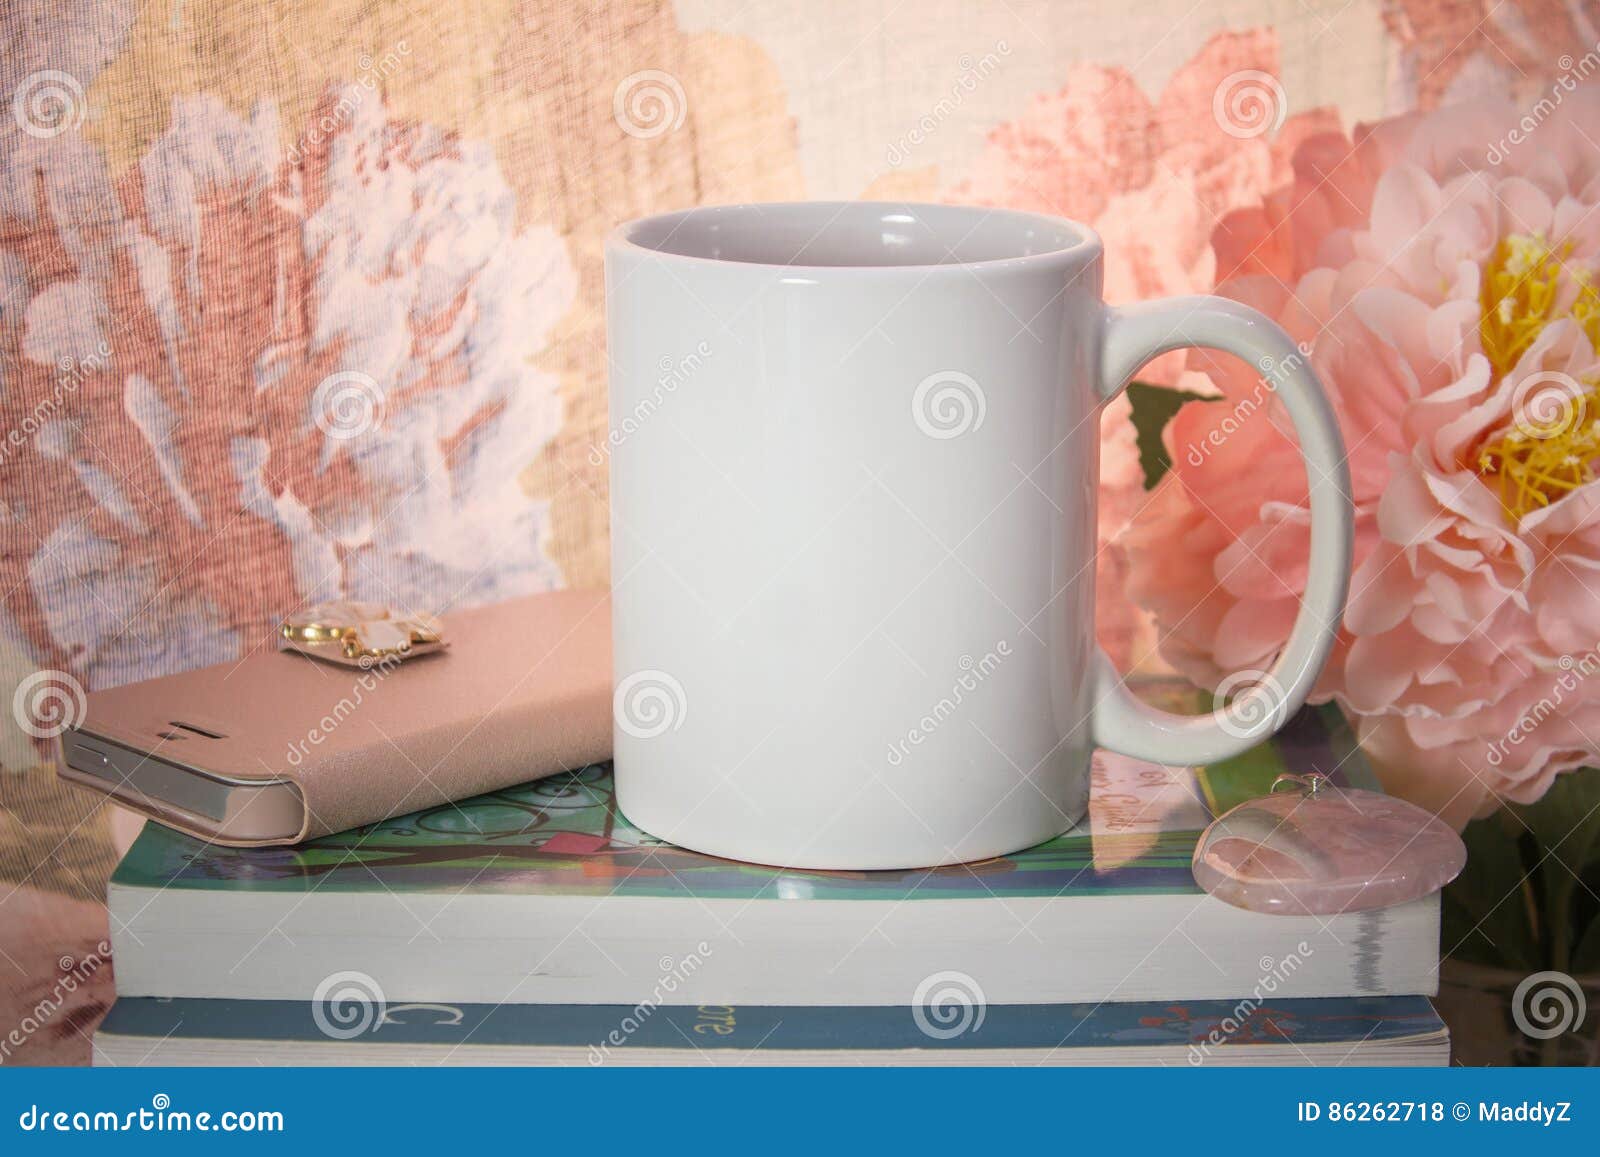 mock-up of a white mug